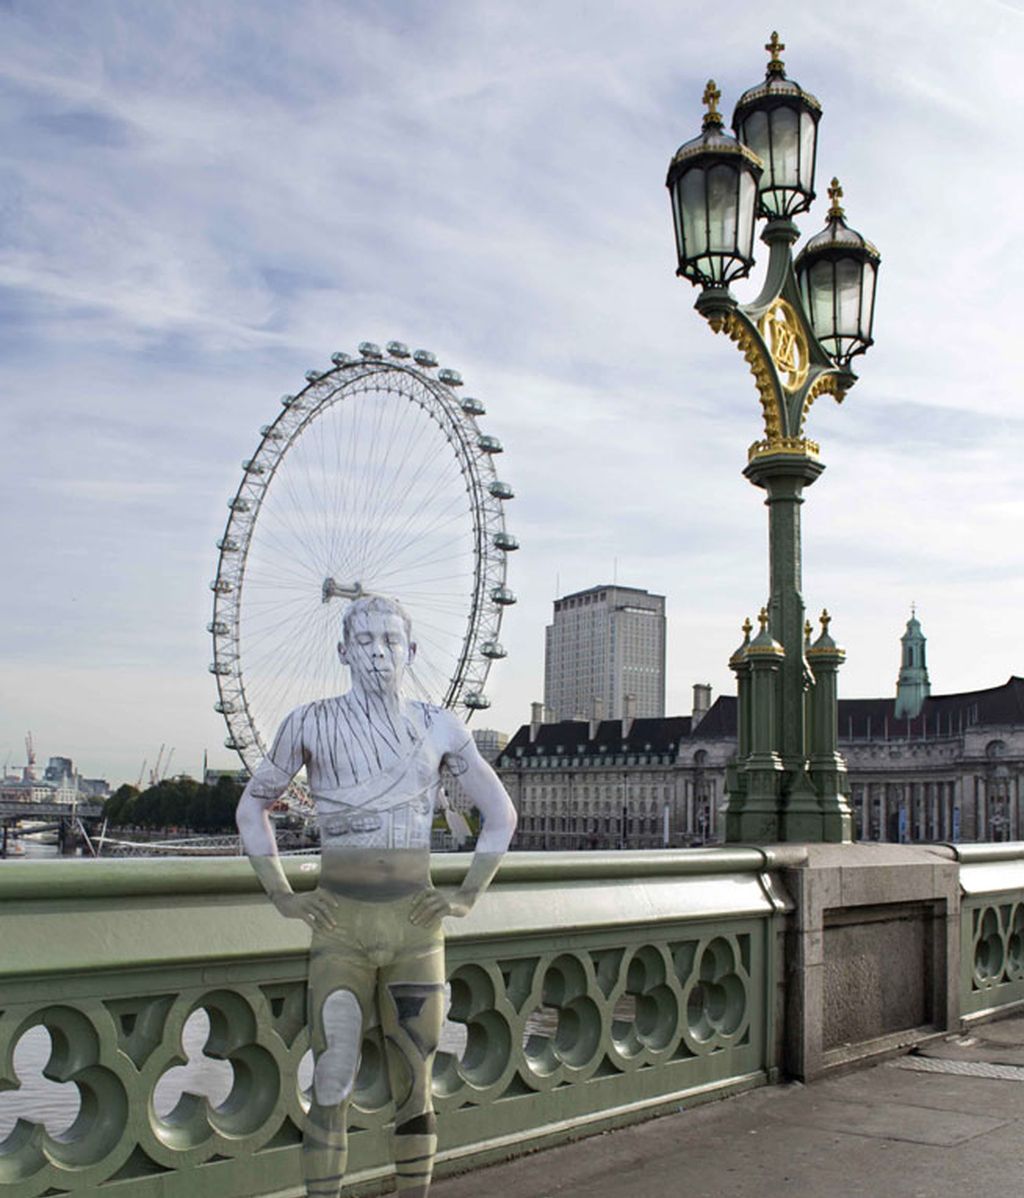 La artista del body painting vuelve a sus modelos invisibles en Londres